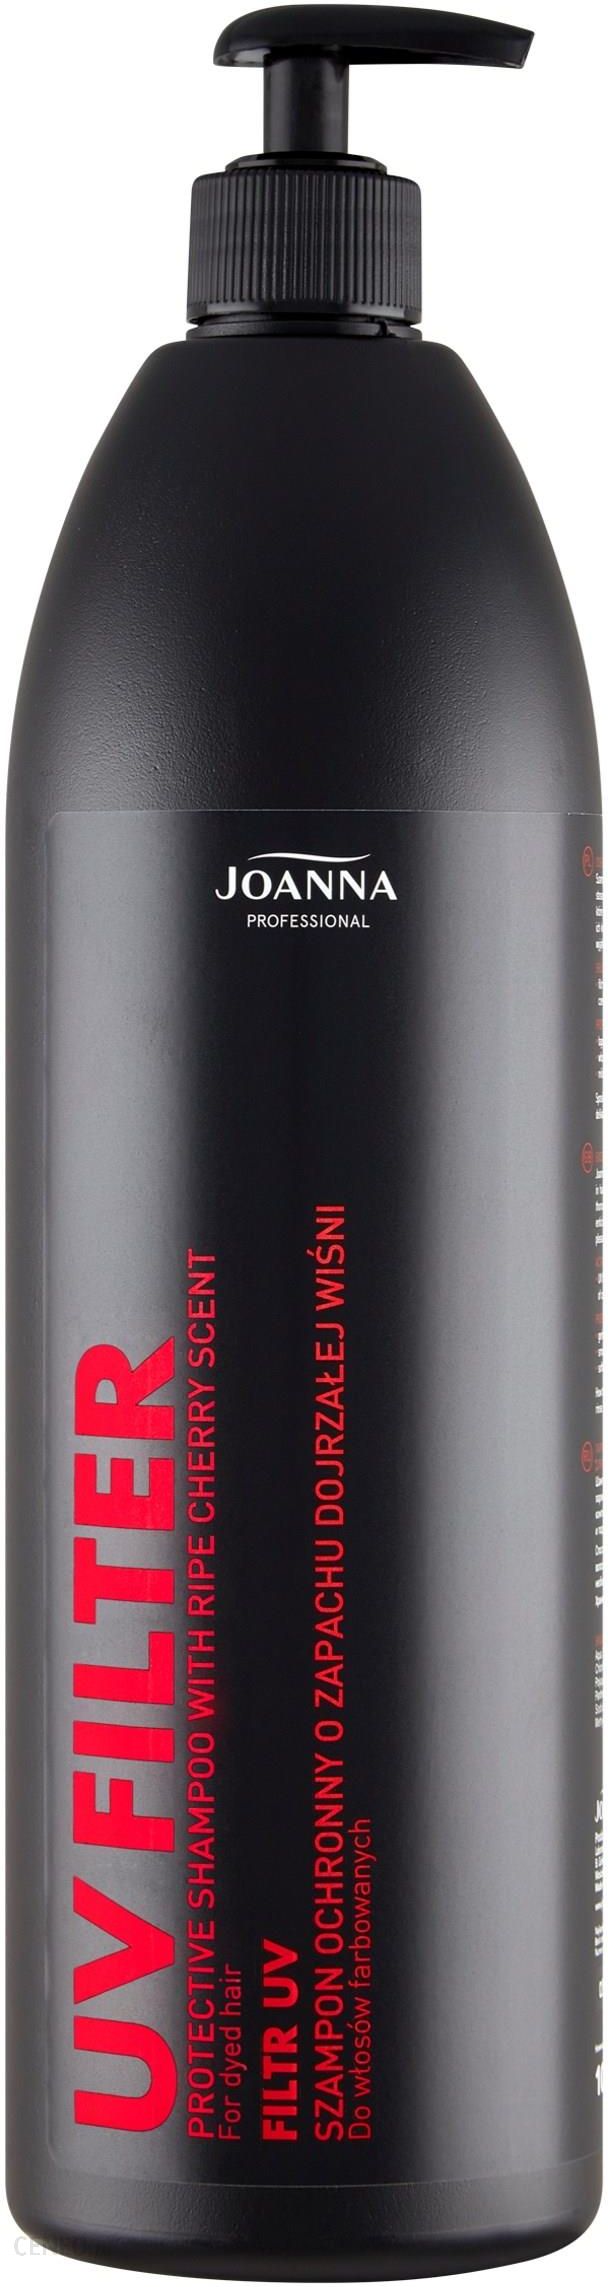 joanna professional pielęgnacja szampon wiśniowy do włosów farbowanych opinie